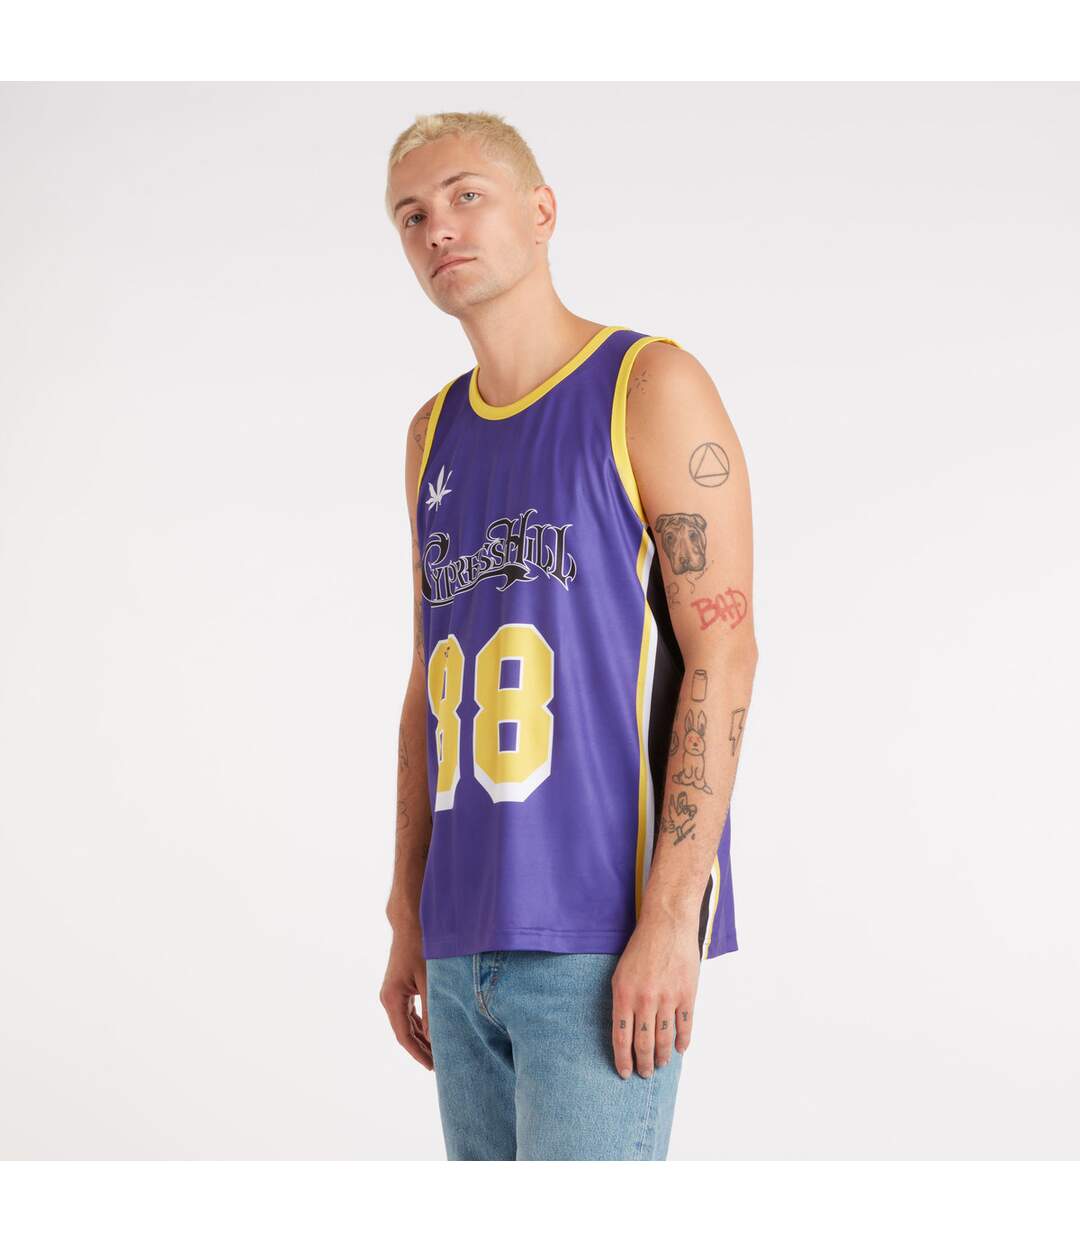 Amplified Mens Greenthumb Cypress Hill Basketball Jersey (Purple)